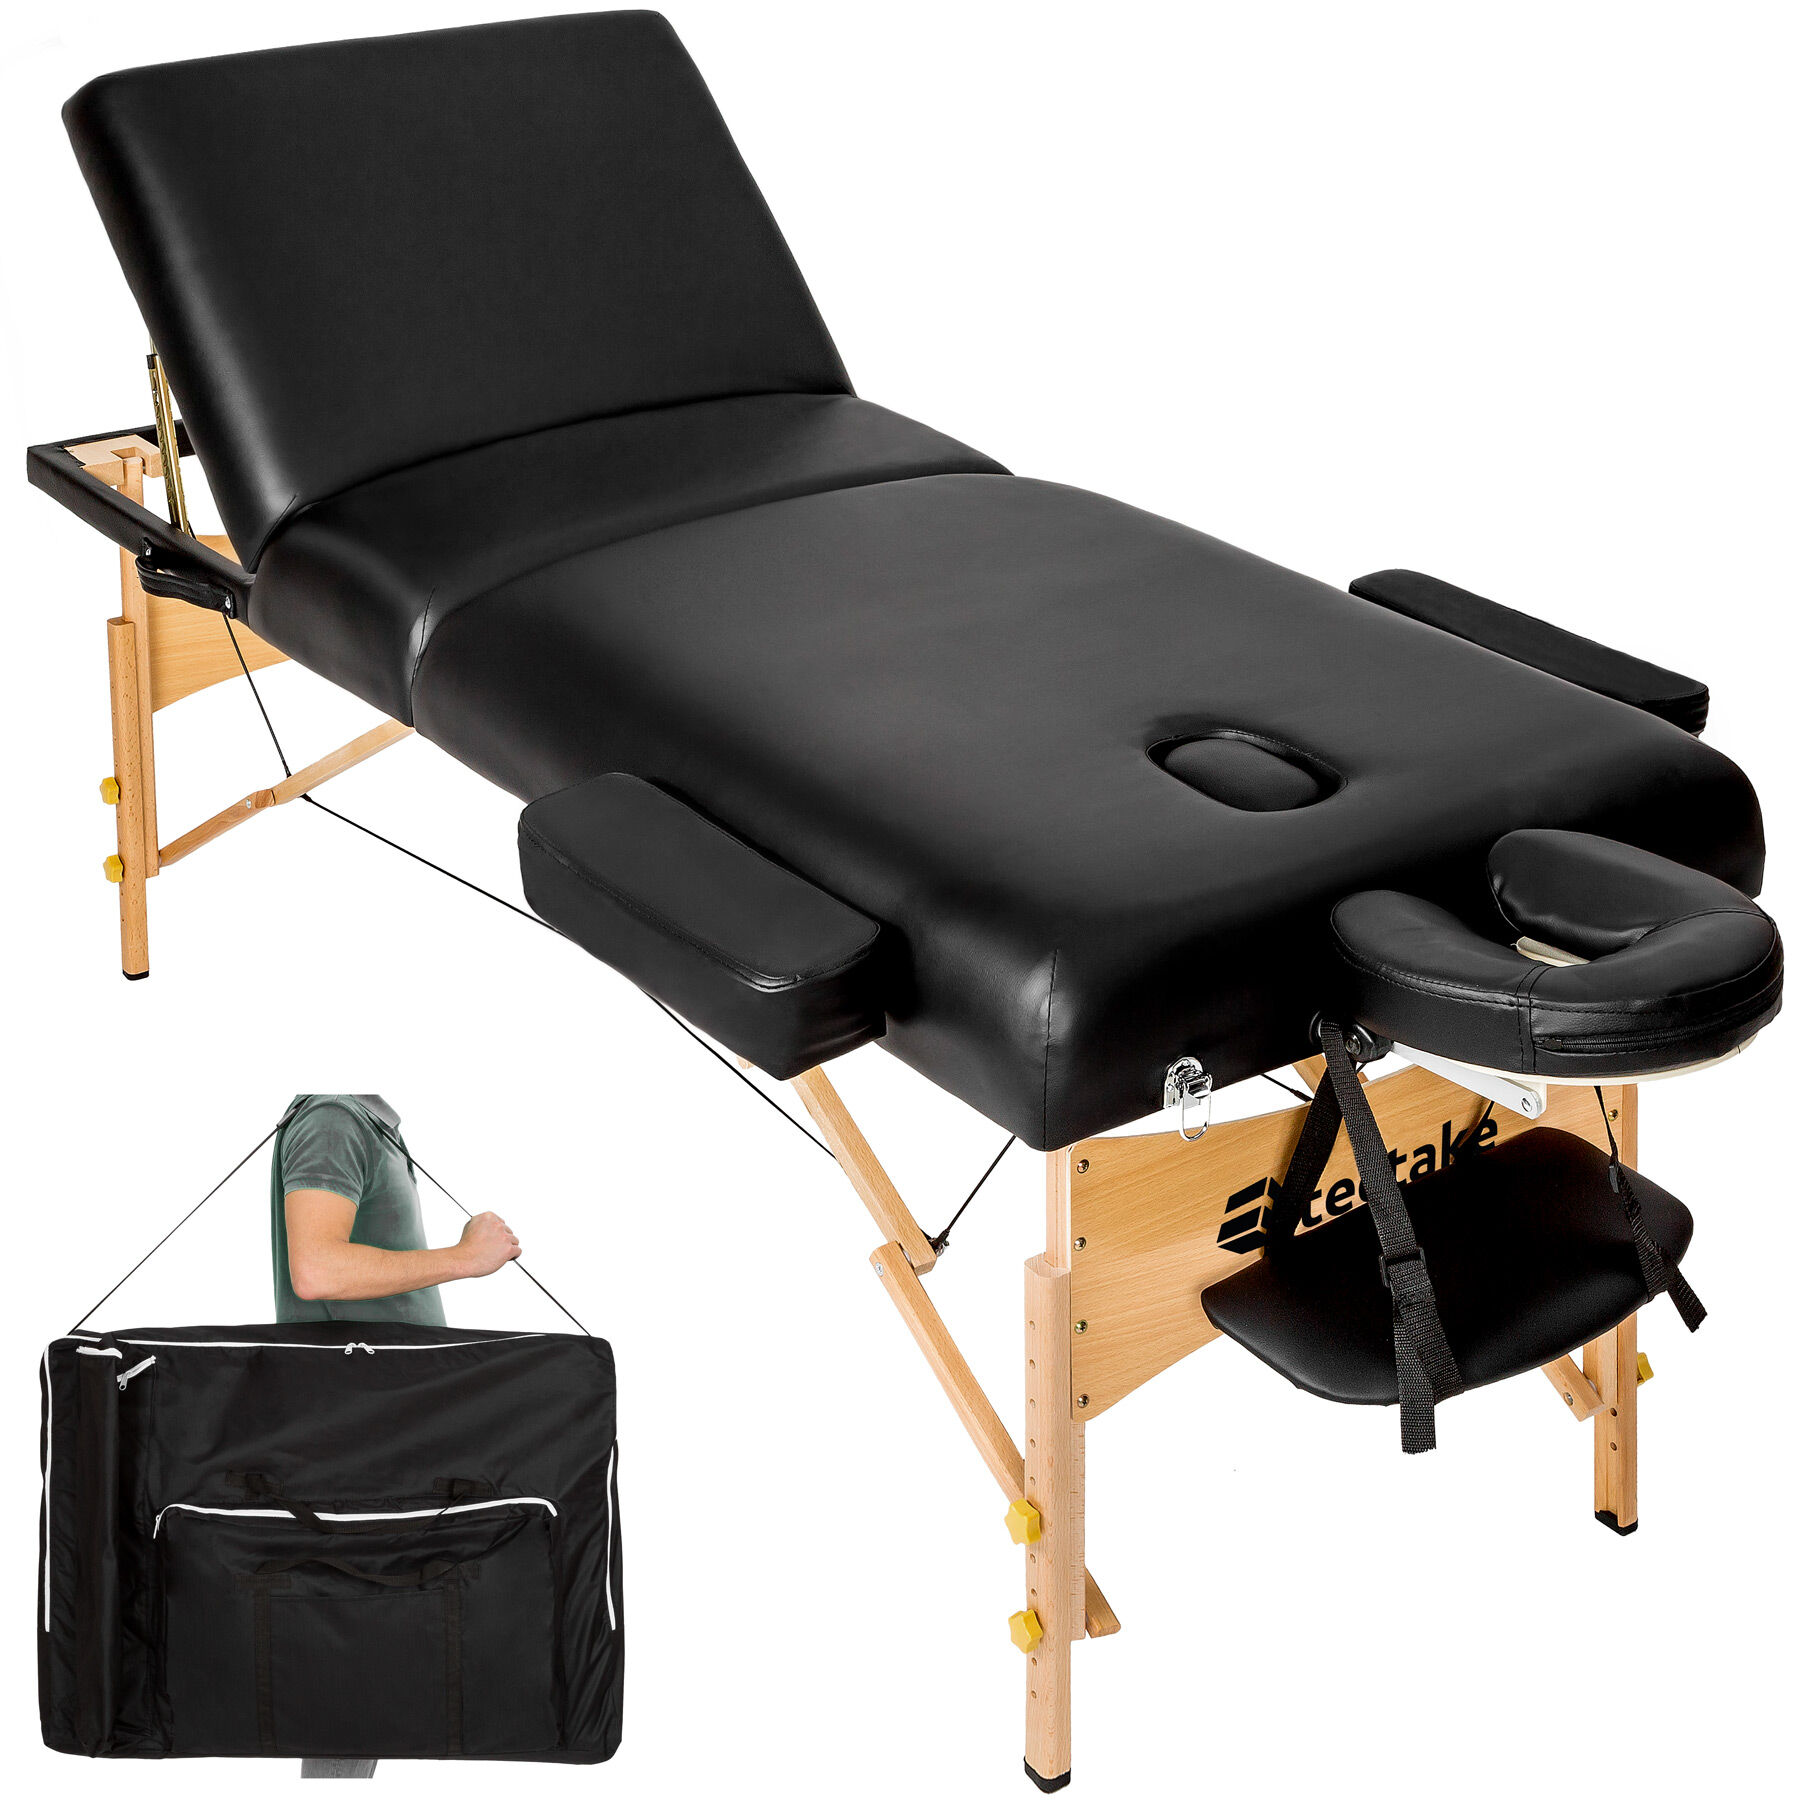 tectake 3-zons massagebänk 10 cm stoppning + väska - svart